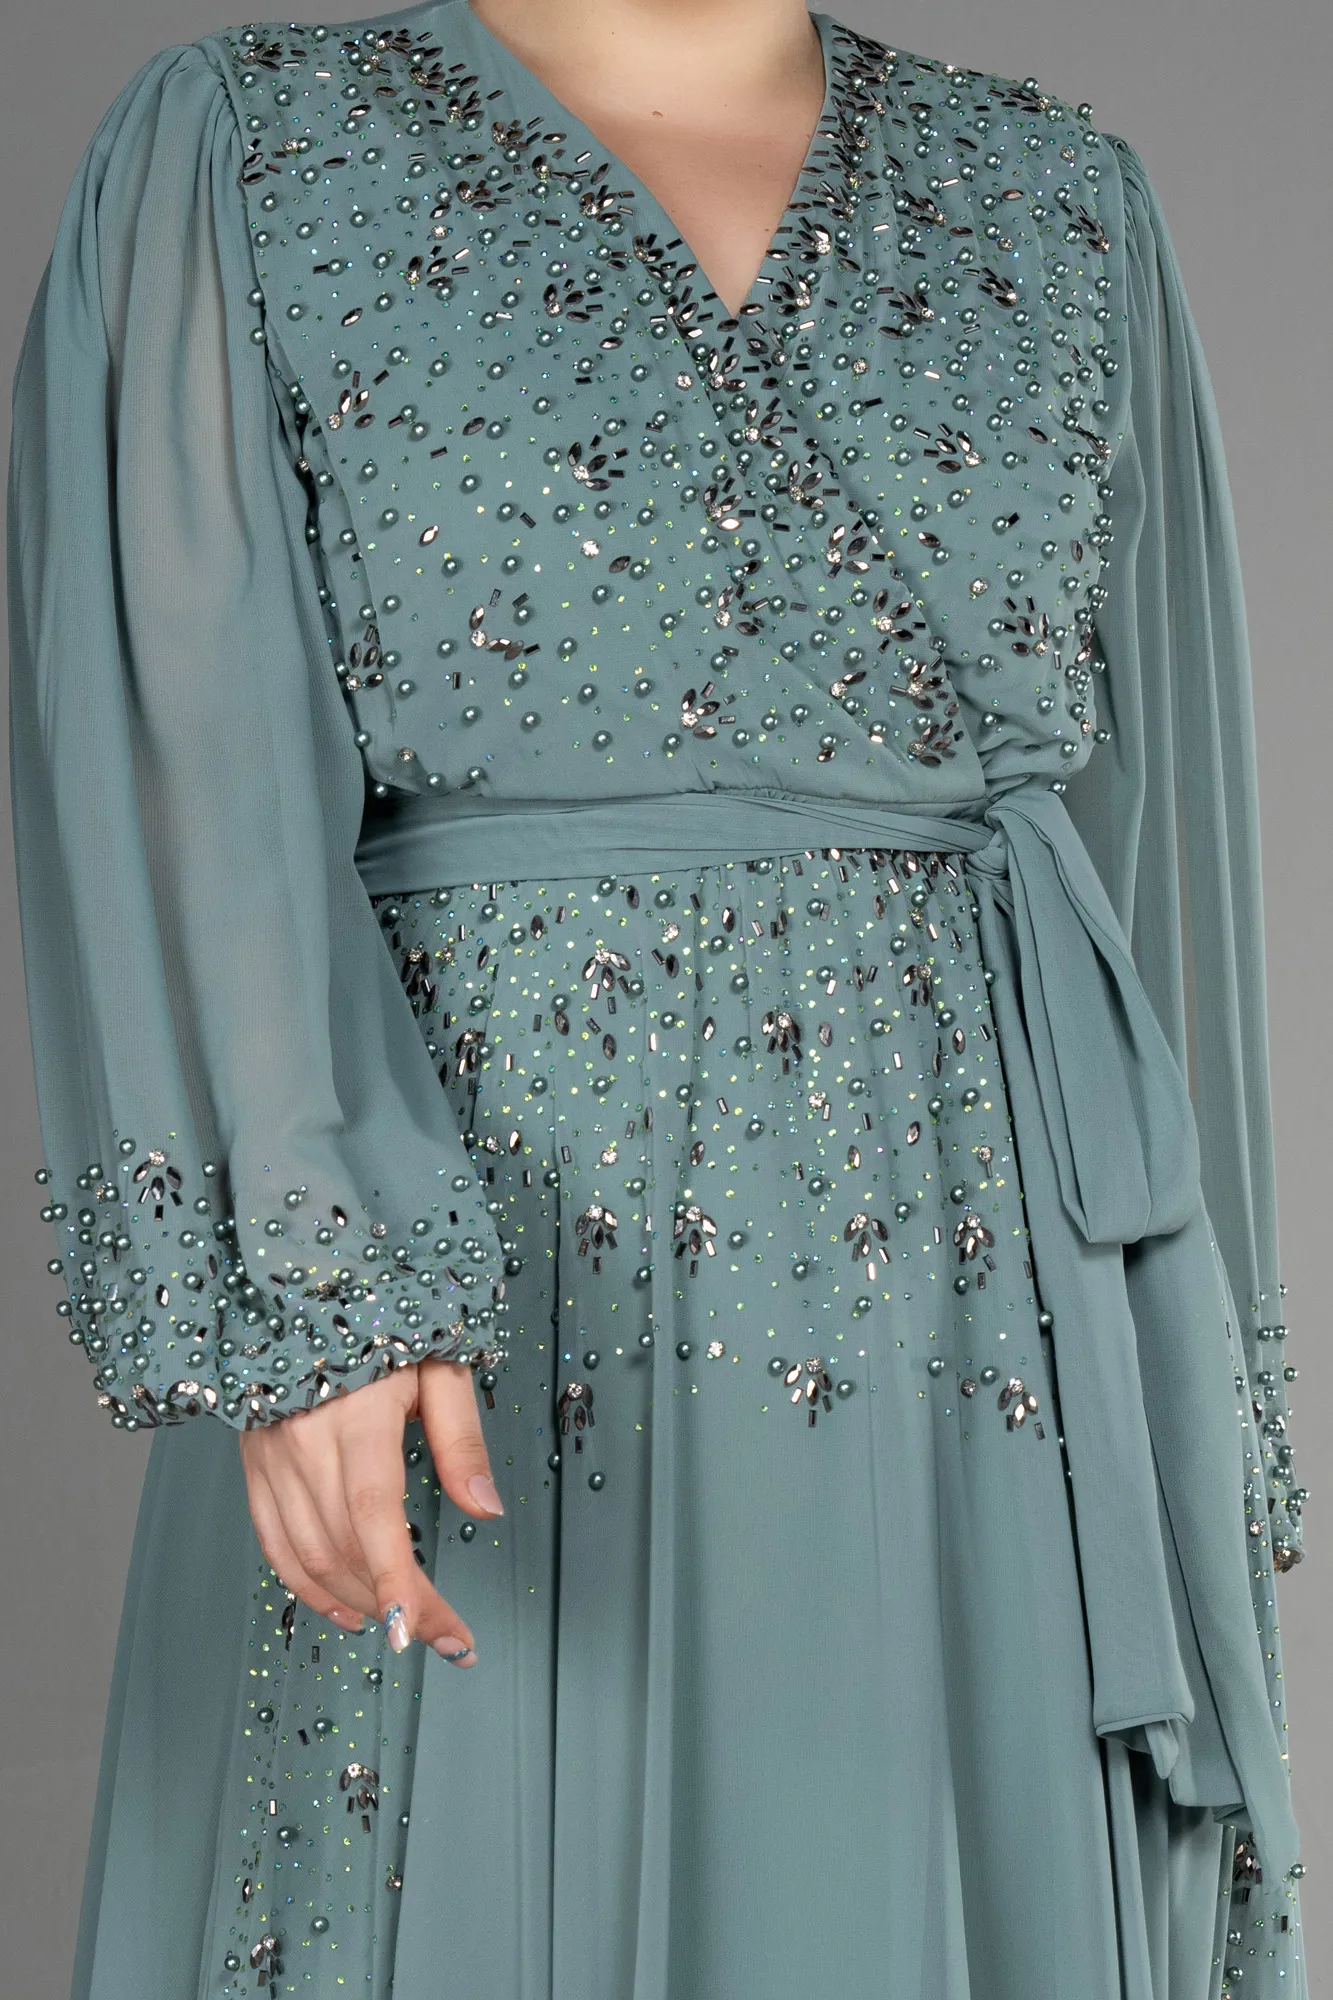 Turquoise-Long Chiffon Plus Size Evening Dress ABU3075